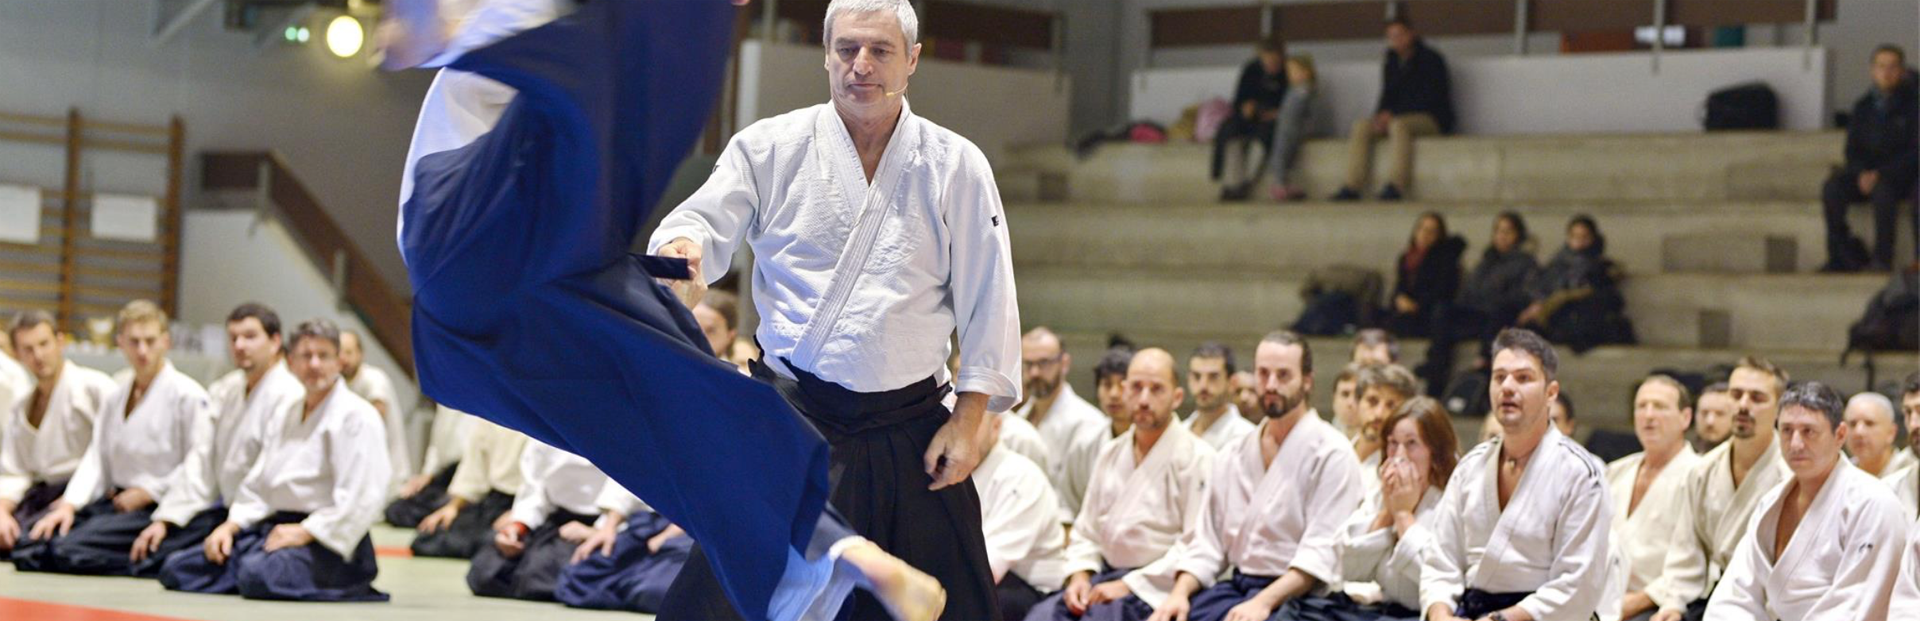 Aïkido Lyon Masséna propose des cours d'aïkido 7 jours sur 7 dans un cadre adapté. A 5 minutes à pied de Lyon Part Dieu et Lyon Brotteaux au coeur de Lyon ...